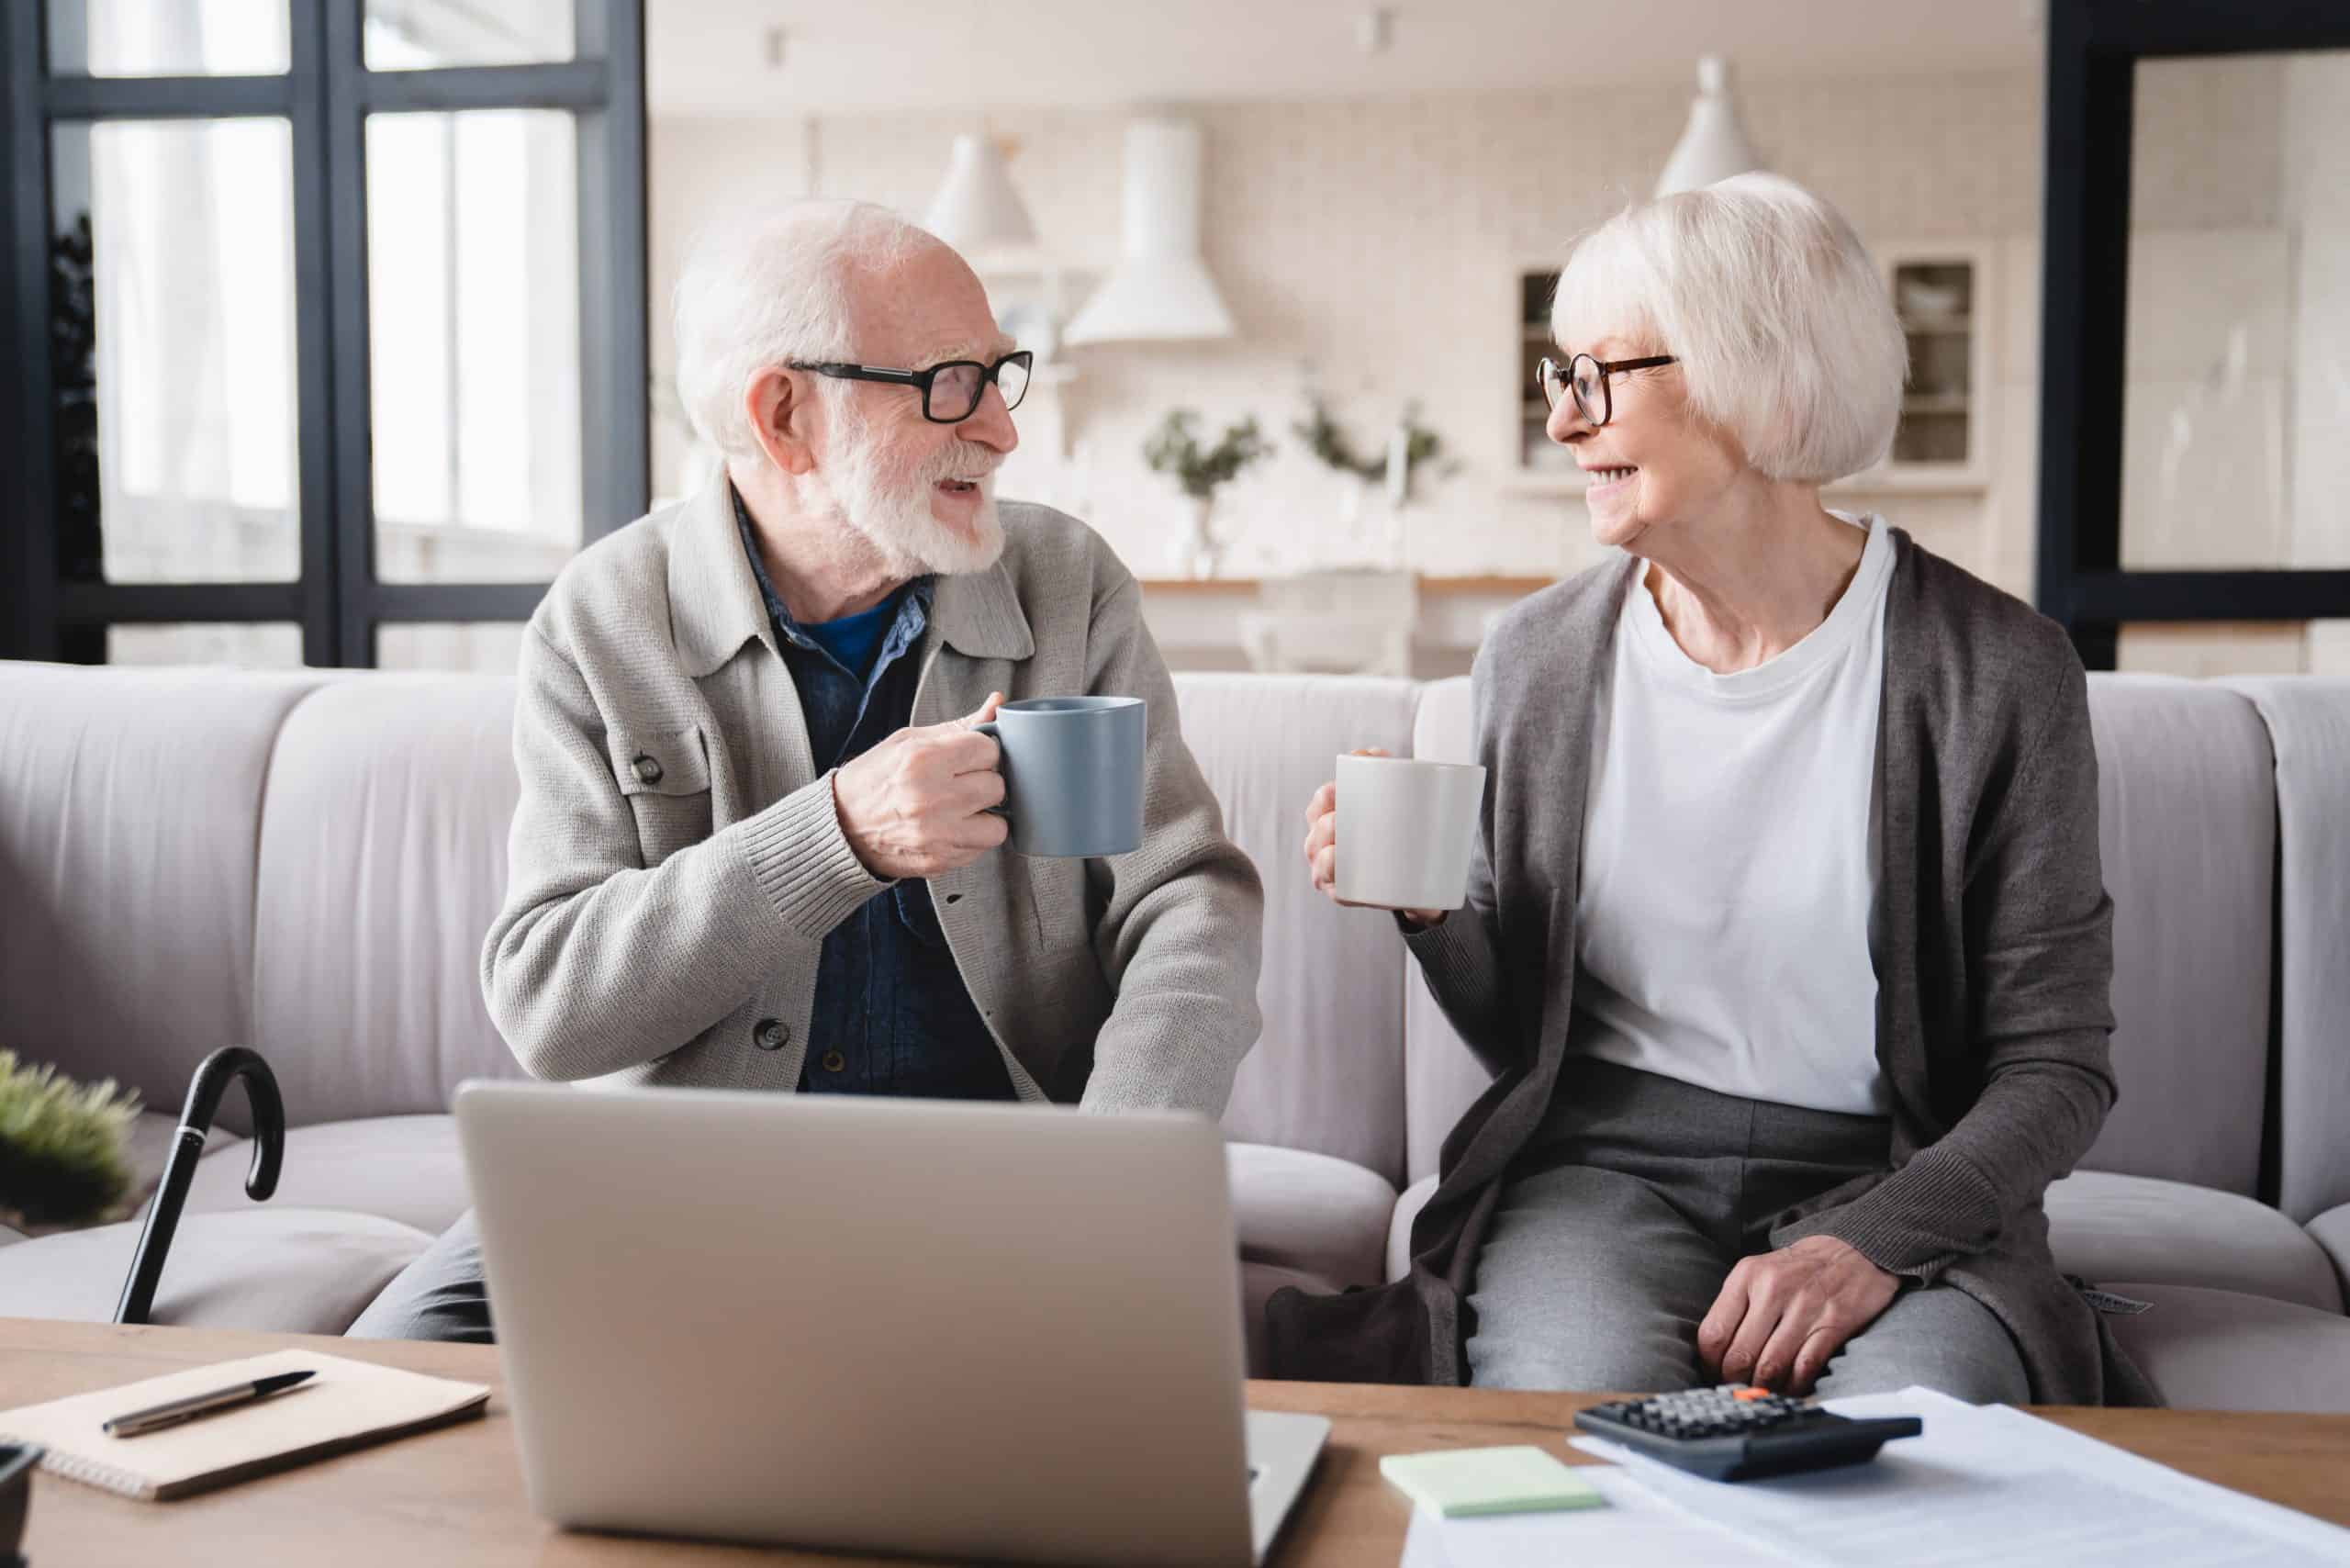 Porodična penzija - ko ima pravo da nasledi porodičnu penziju, kako se određuje iznos porodične penzije, koji je iznos minimalne porodične penzije, nasleđivanje inostrane penzije